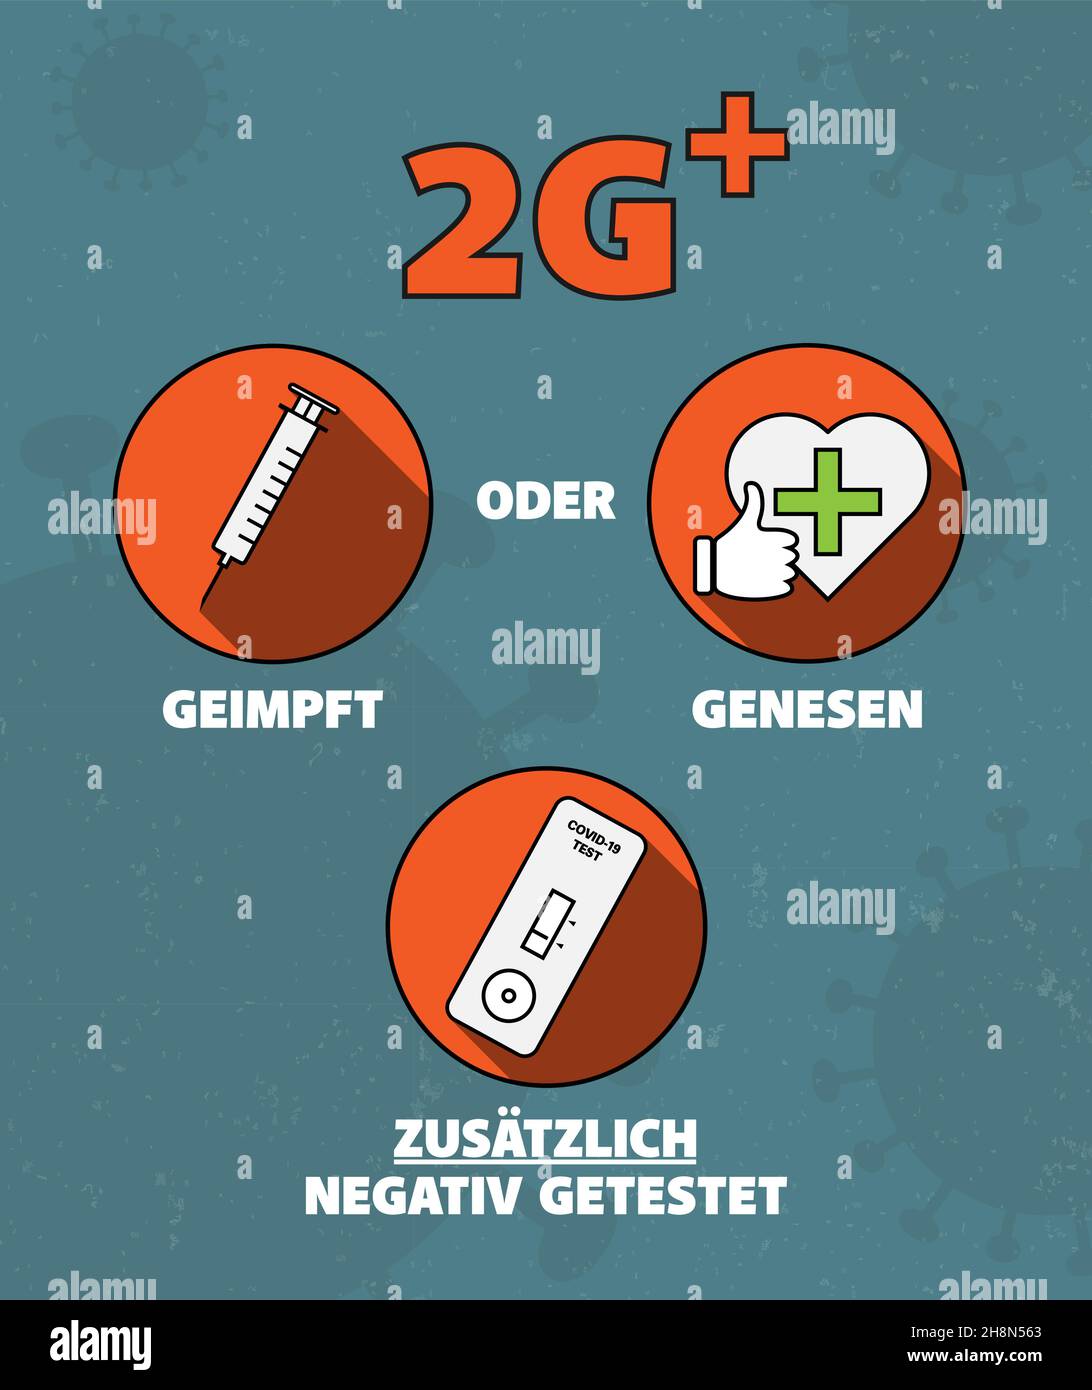 Signez ou apposez un autocollant avec les règles 2G PLUS en Allemagne, accès uniquement pour les personnes vaccinées (GEIMPFT) ou récupérées (GENESEN) avec des négatifs supplémentaires Illustration de Vecteur